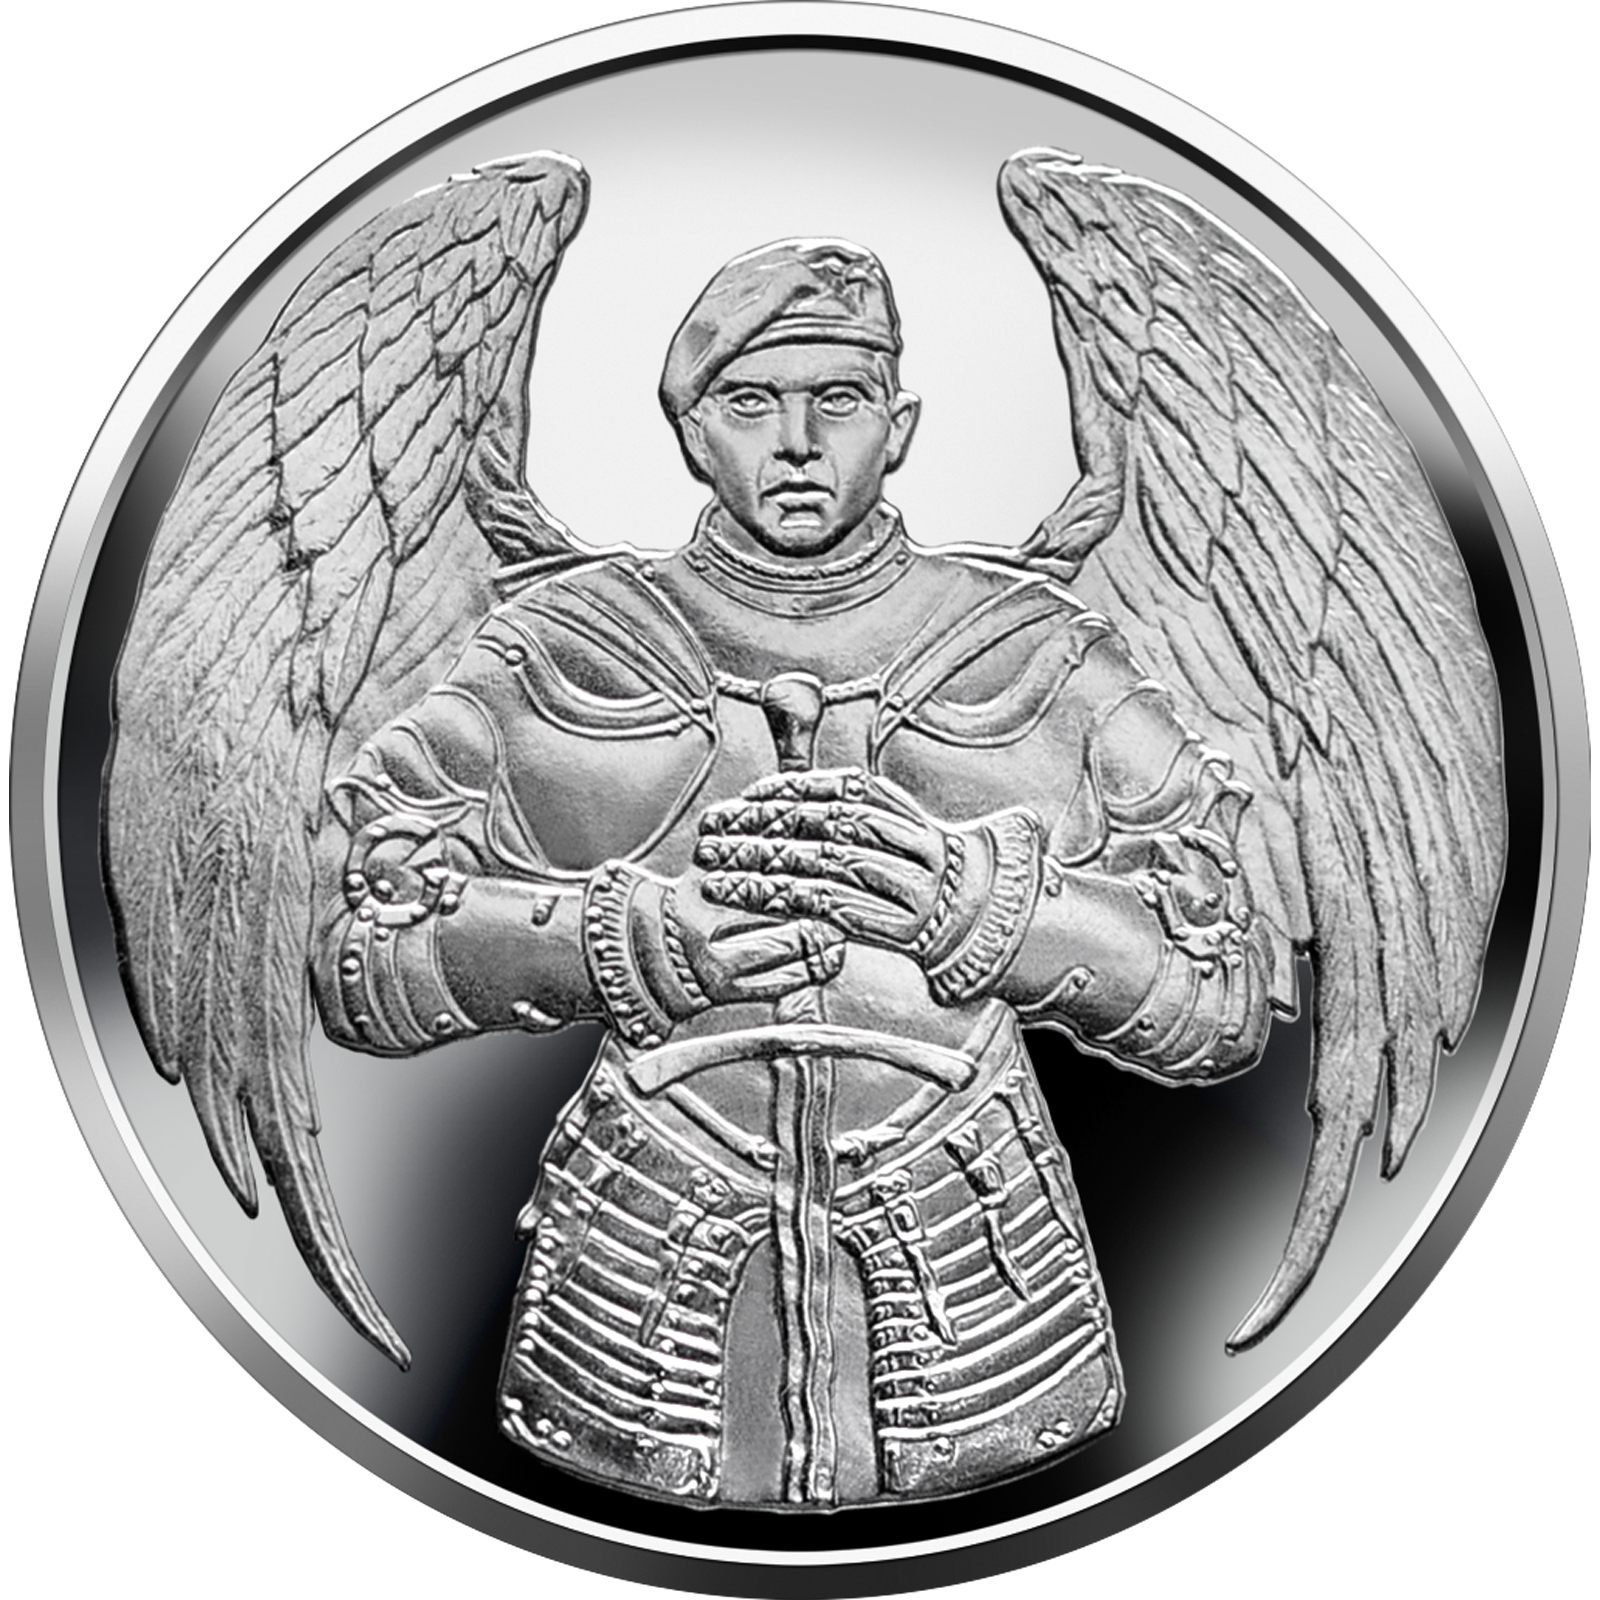 Реверс монеты, посвященной десантникам